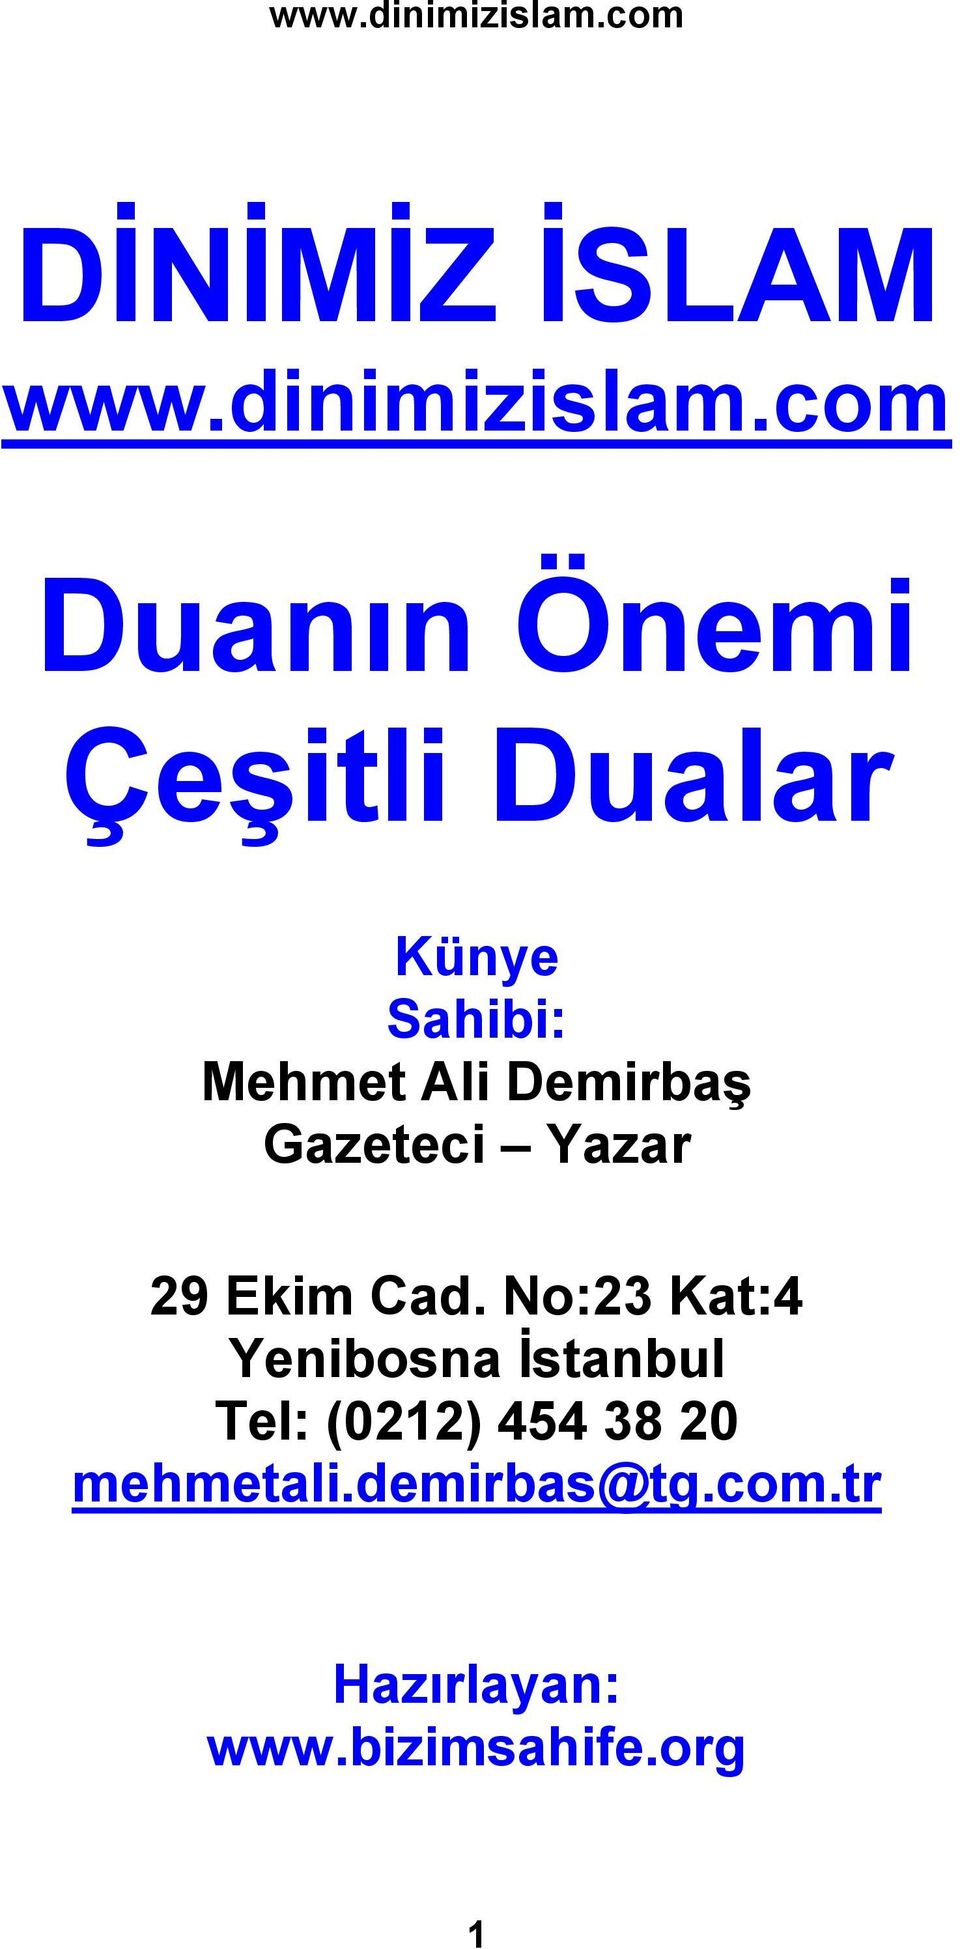 Demirbaş Gazeteci Yazar 29 Ekim Cad.